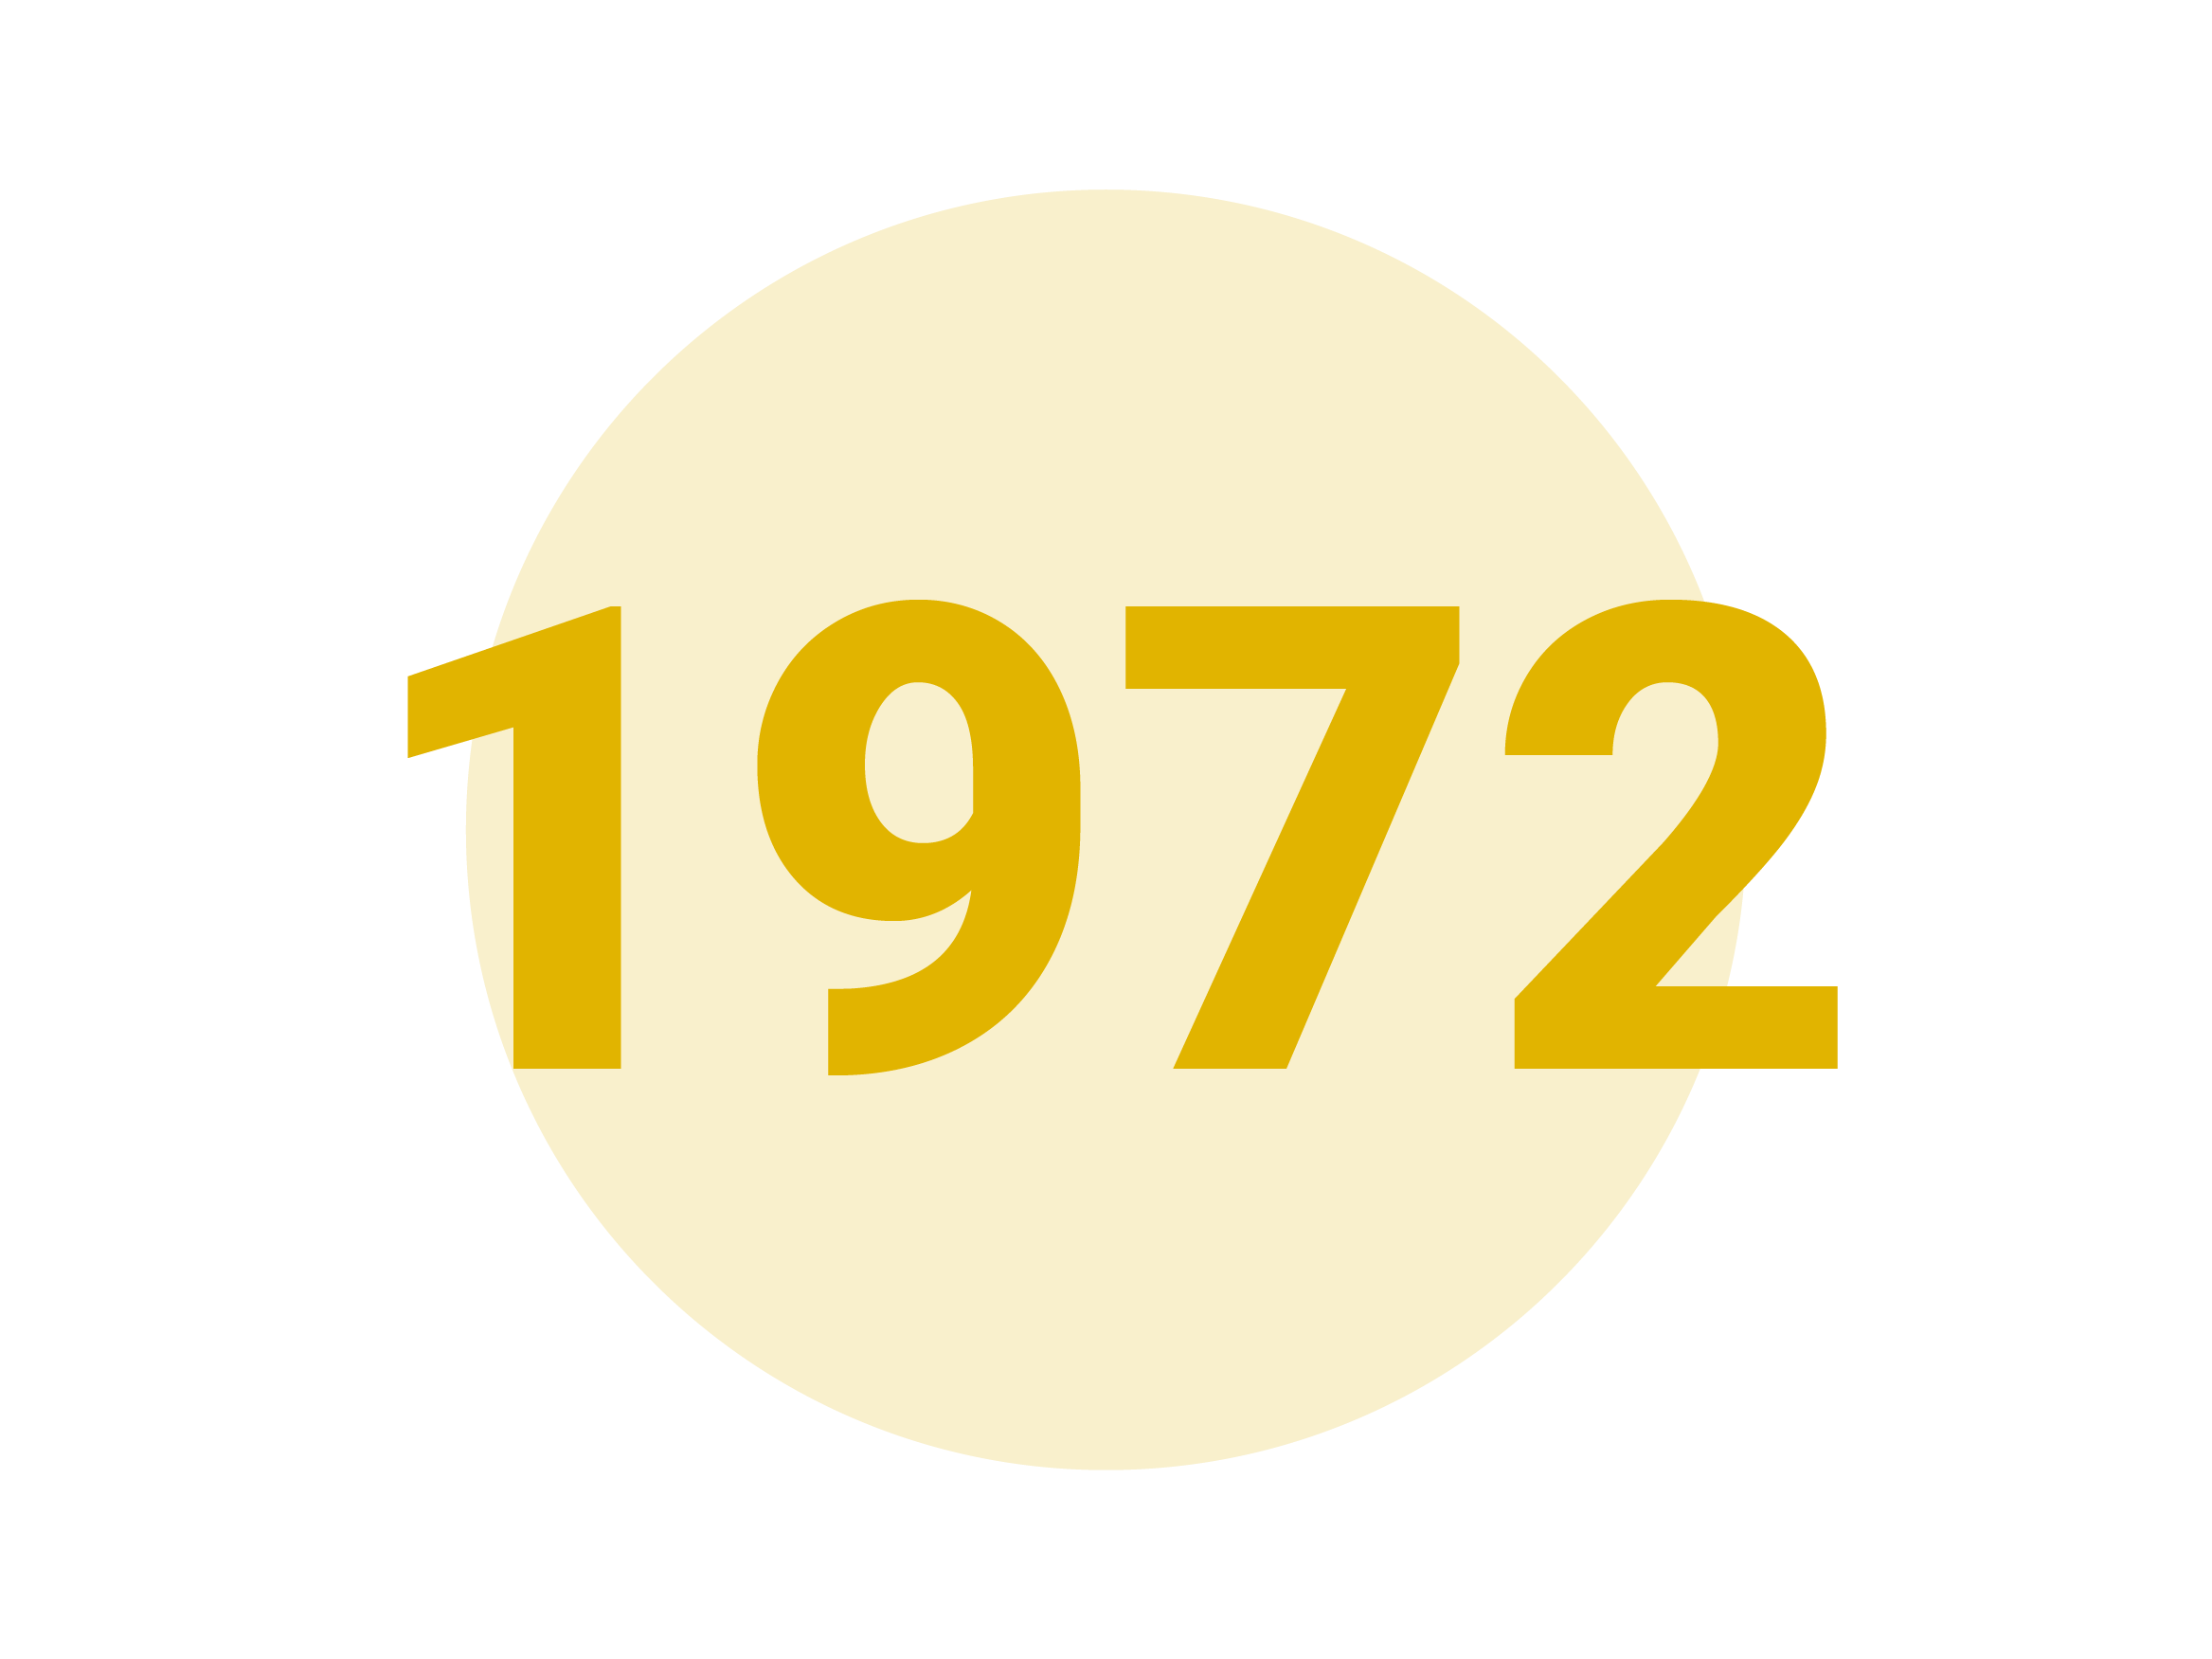 1972